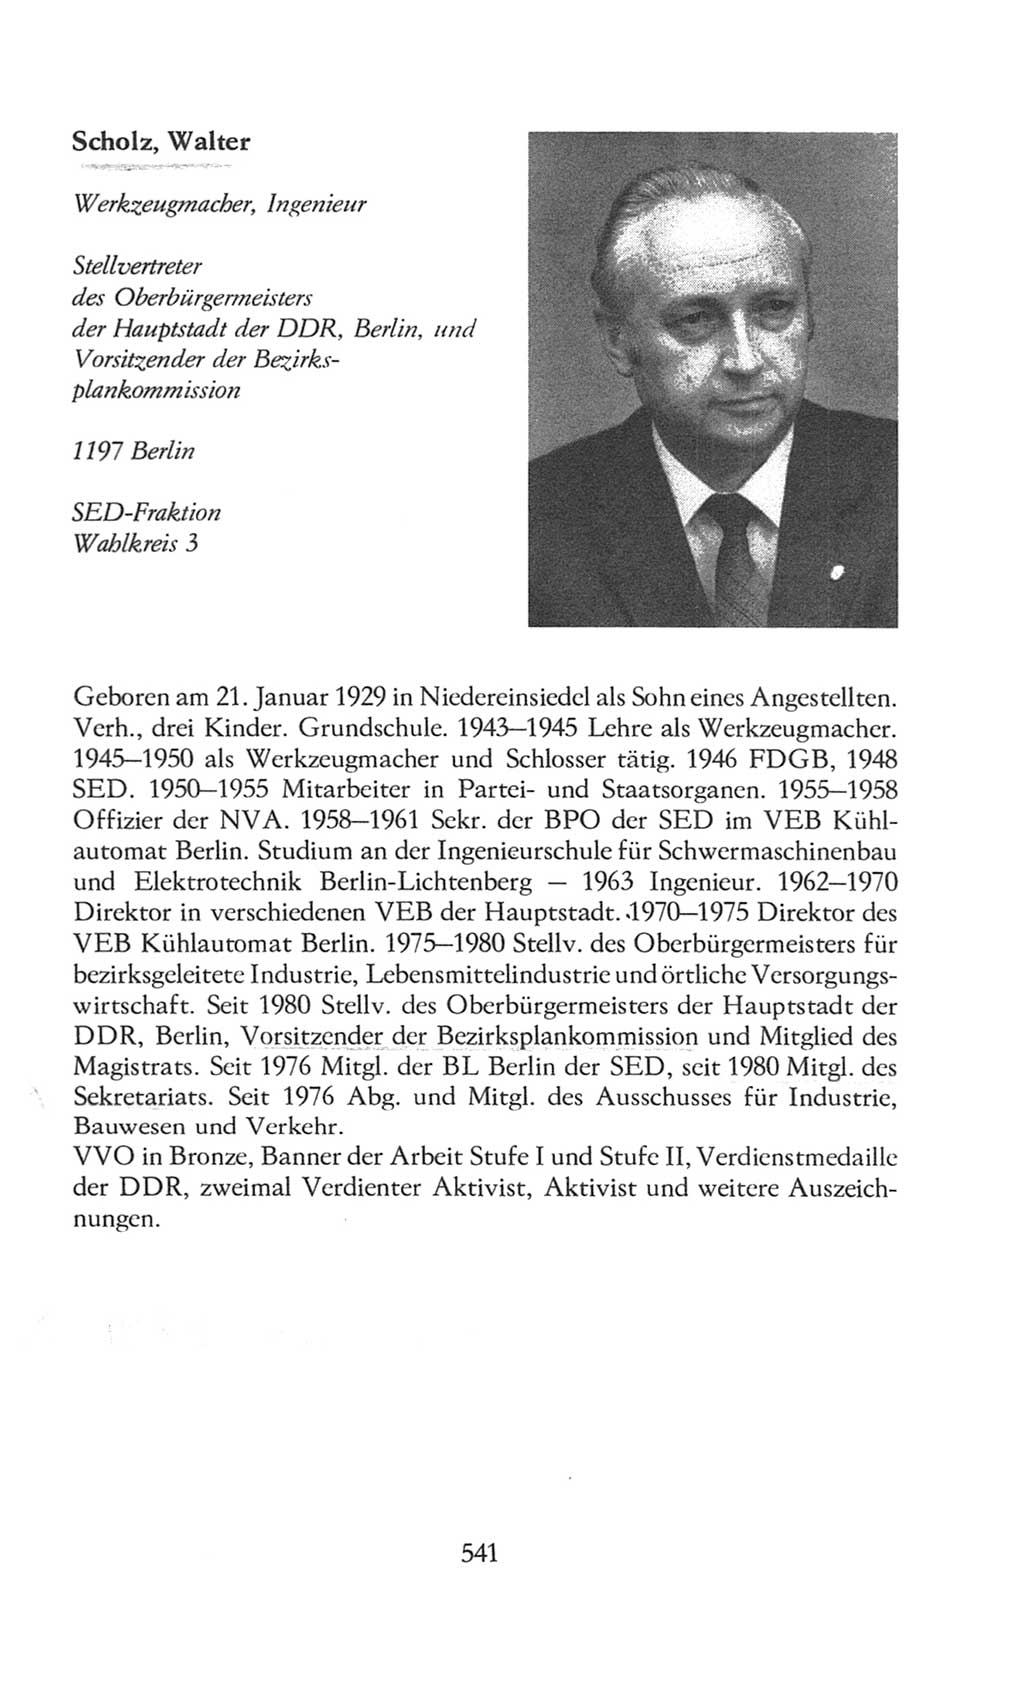 Volkskammer (VK) der Deutschen Demokratischen Republik (DDR), 8. Wahlperiode 1981-1986, Seite 541 (VK. DDR 8. WP. 1981-1986, S. 541)